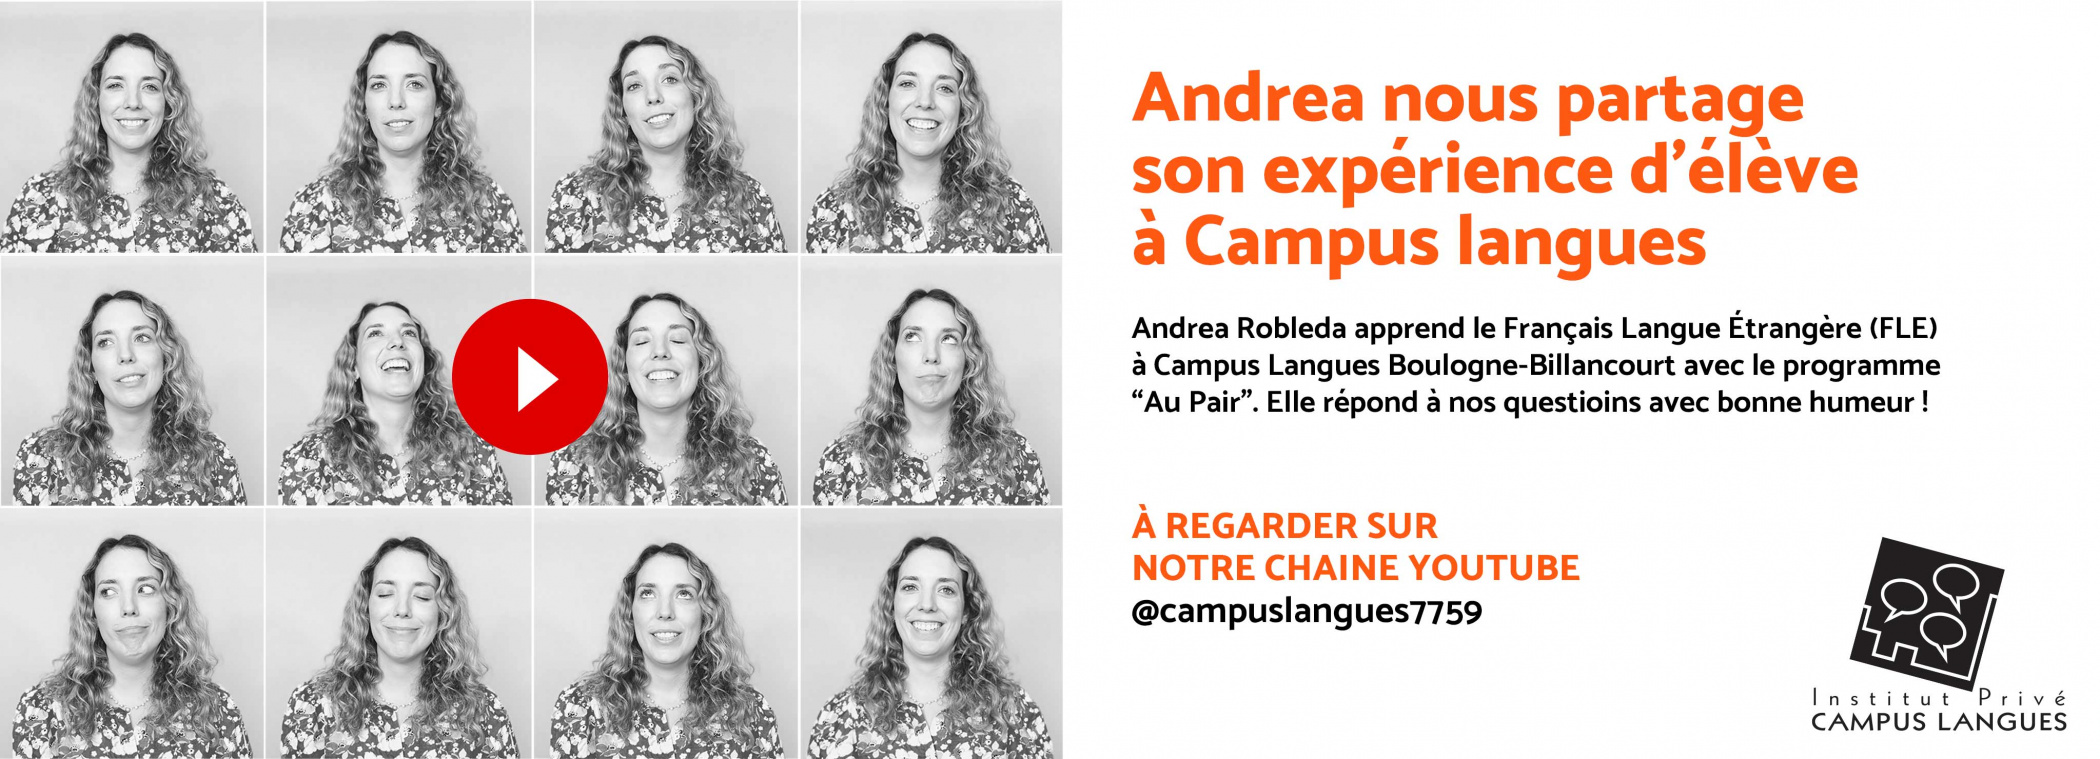 Illustration - Andrea nous partage son expérience d'élève à Campus Langues. A regarder sur notre chaine YOUTUBE https://www.youtube.com/@campuslangues7759